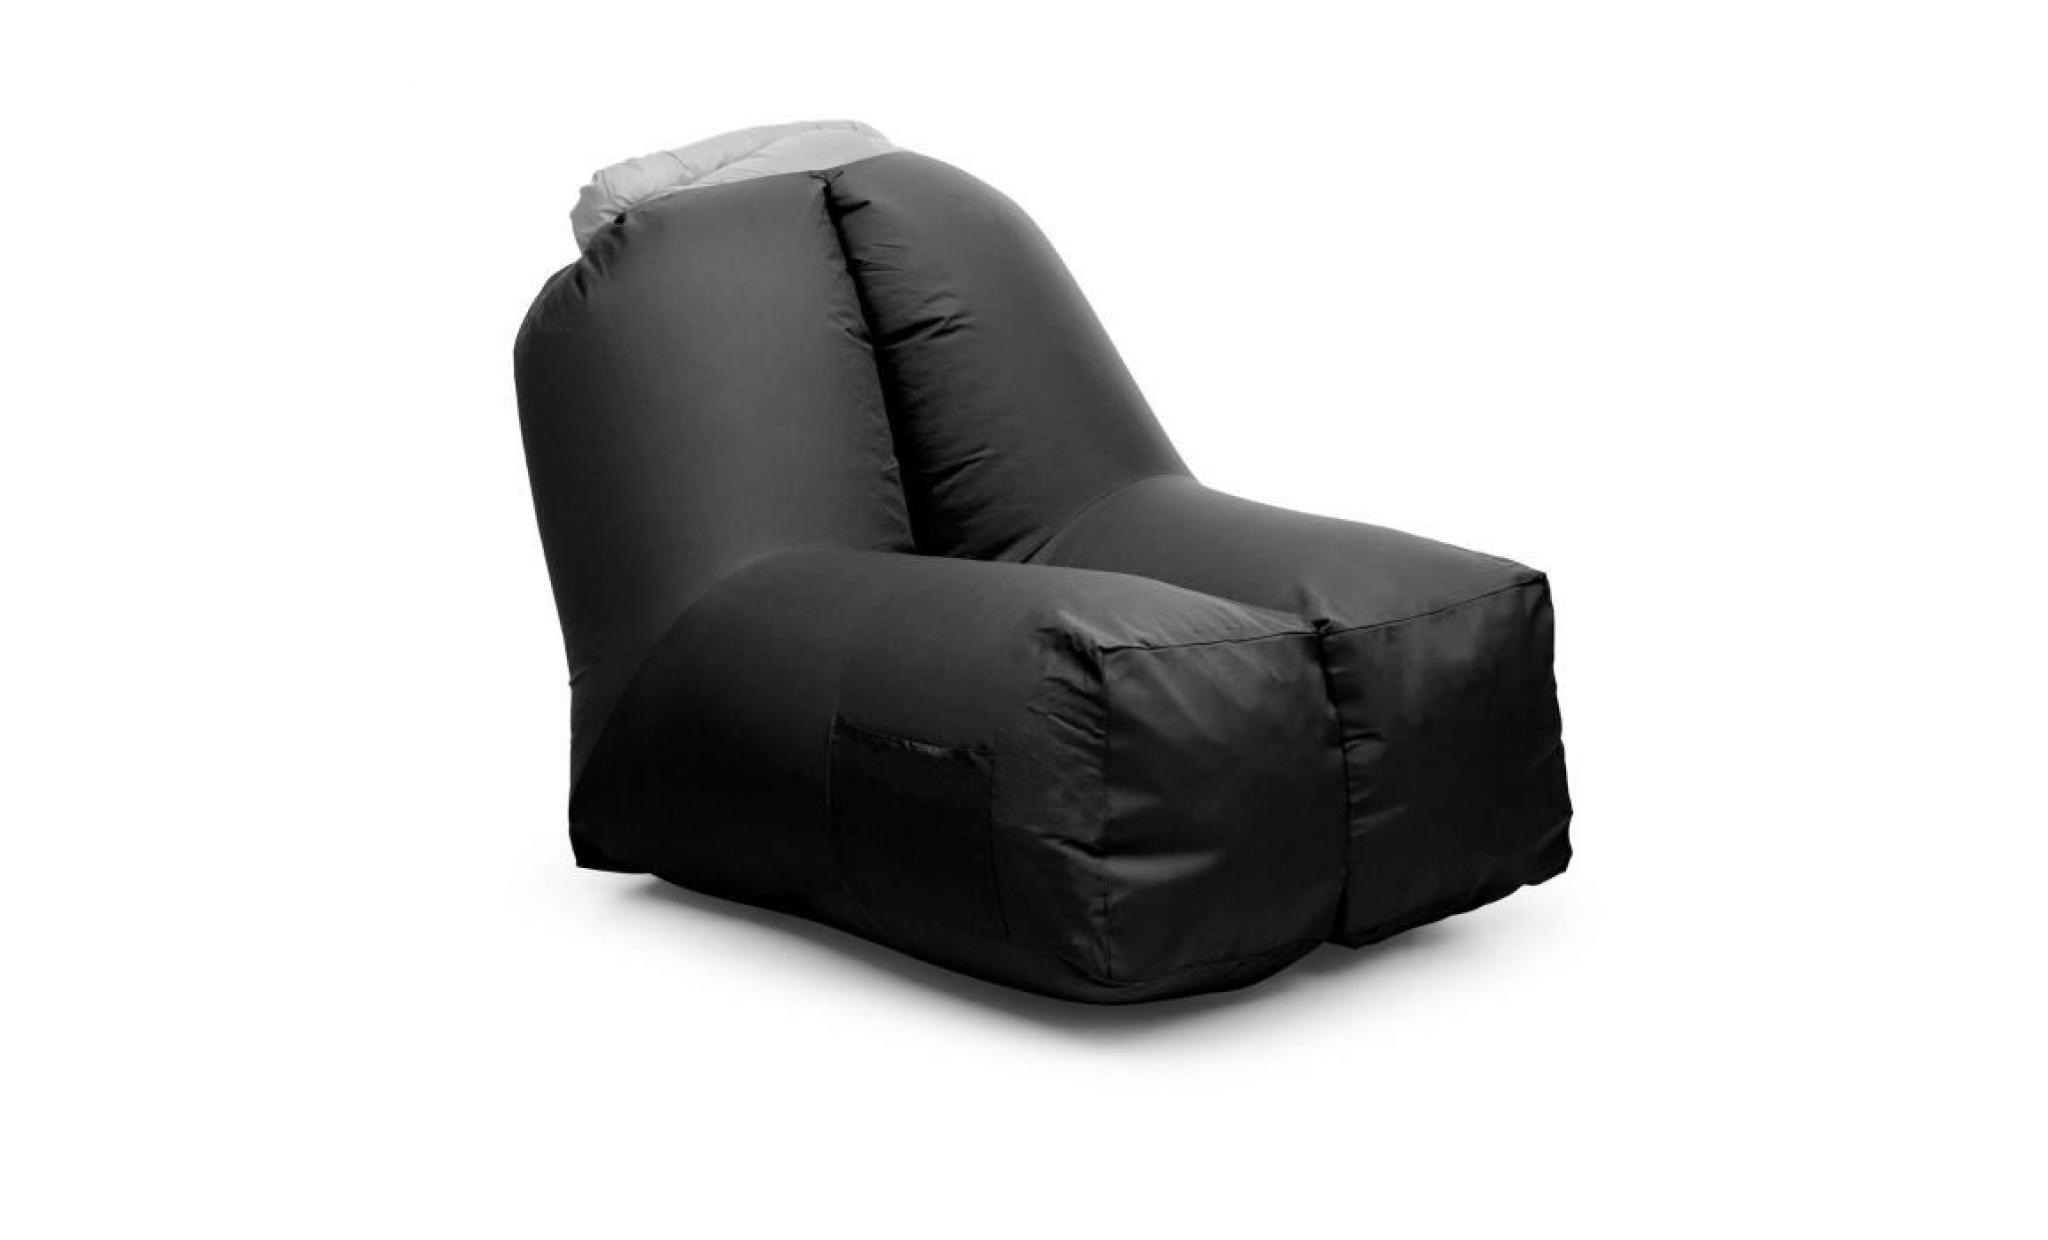 blumfeldt airchair fauteuil gonflable  de jardin 80 x 80 x 100cm   sac à dos de transport lavable inclus   housse polyester   vert